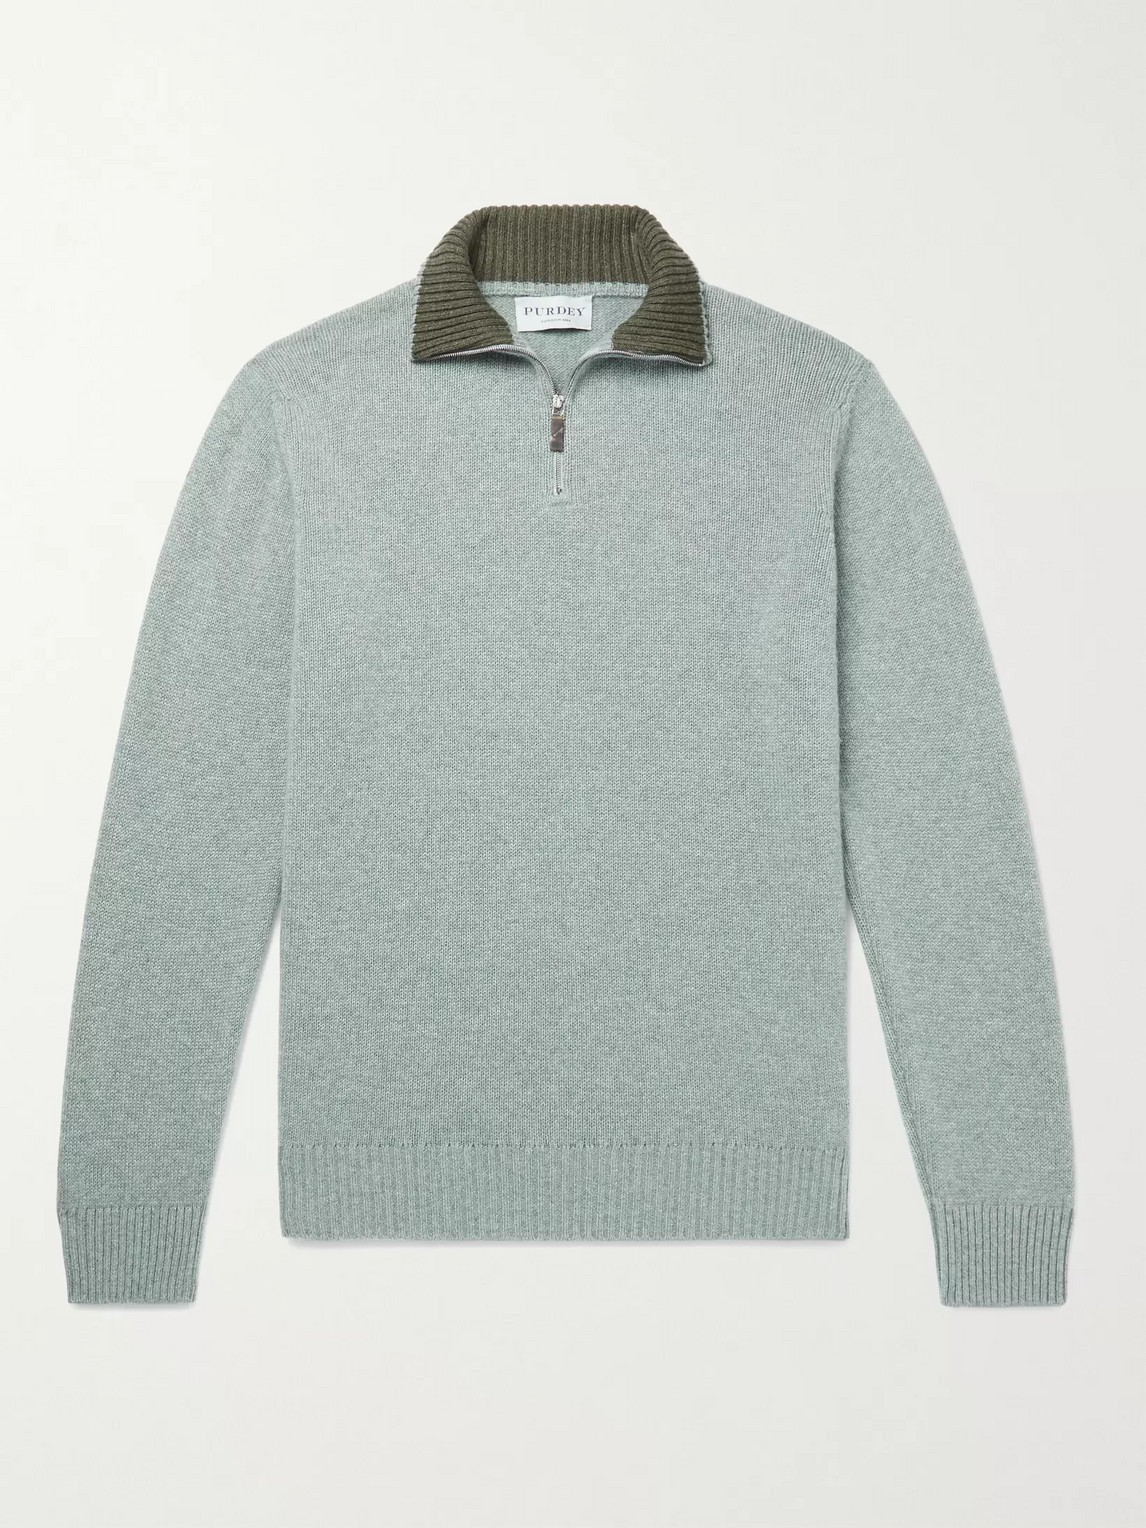 Purdey Slim-fit Mélange Cashmere Half-zip Sweater In Green